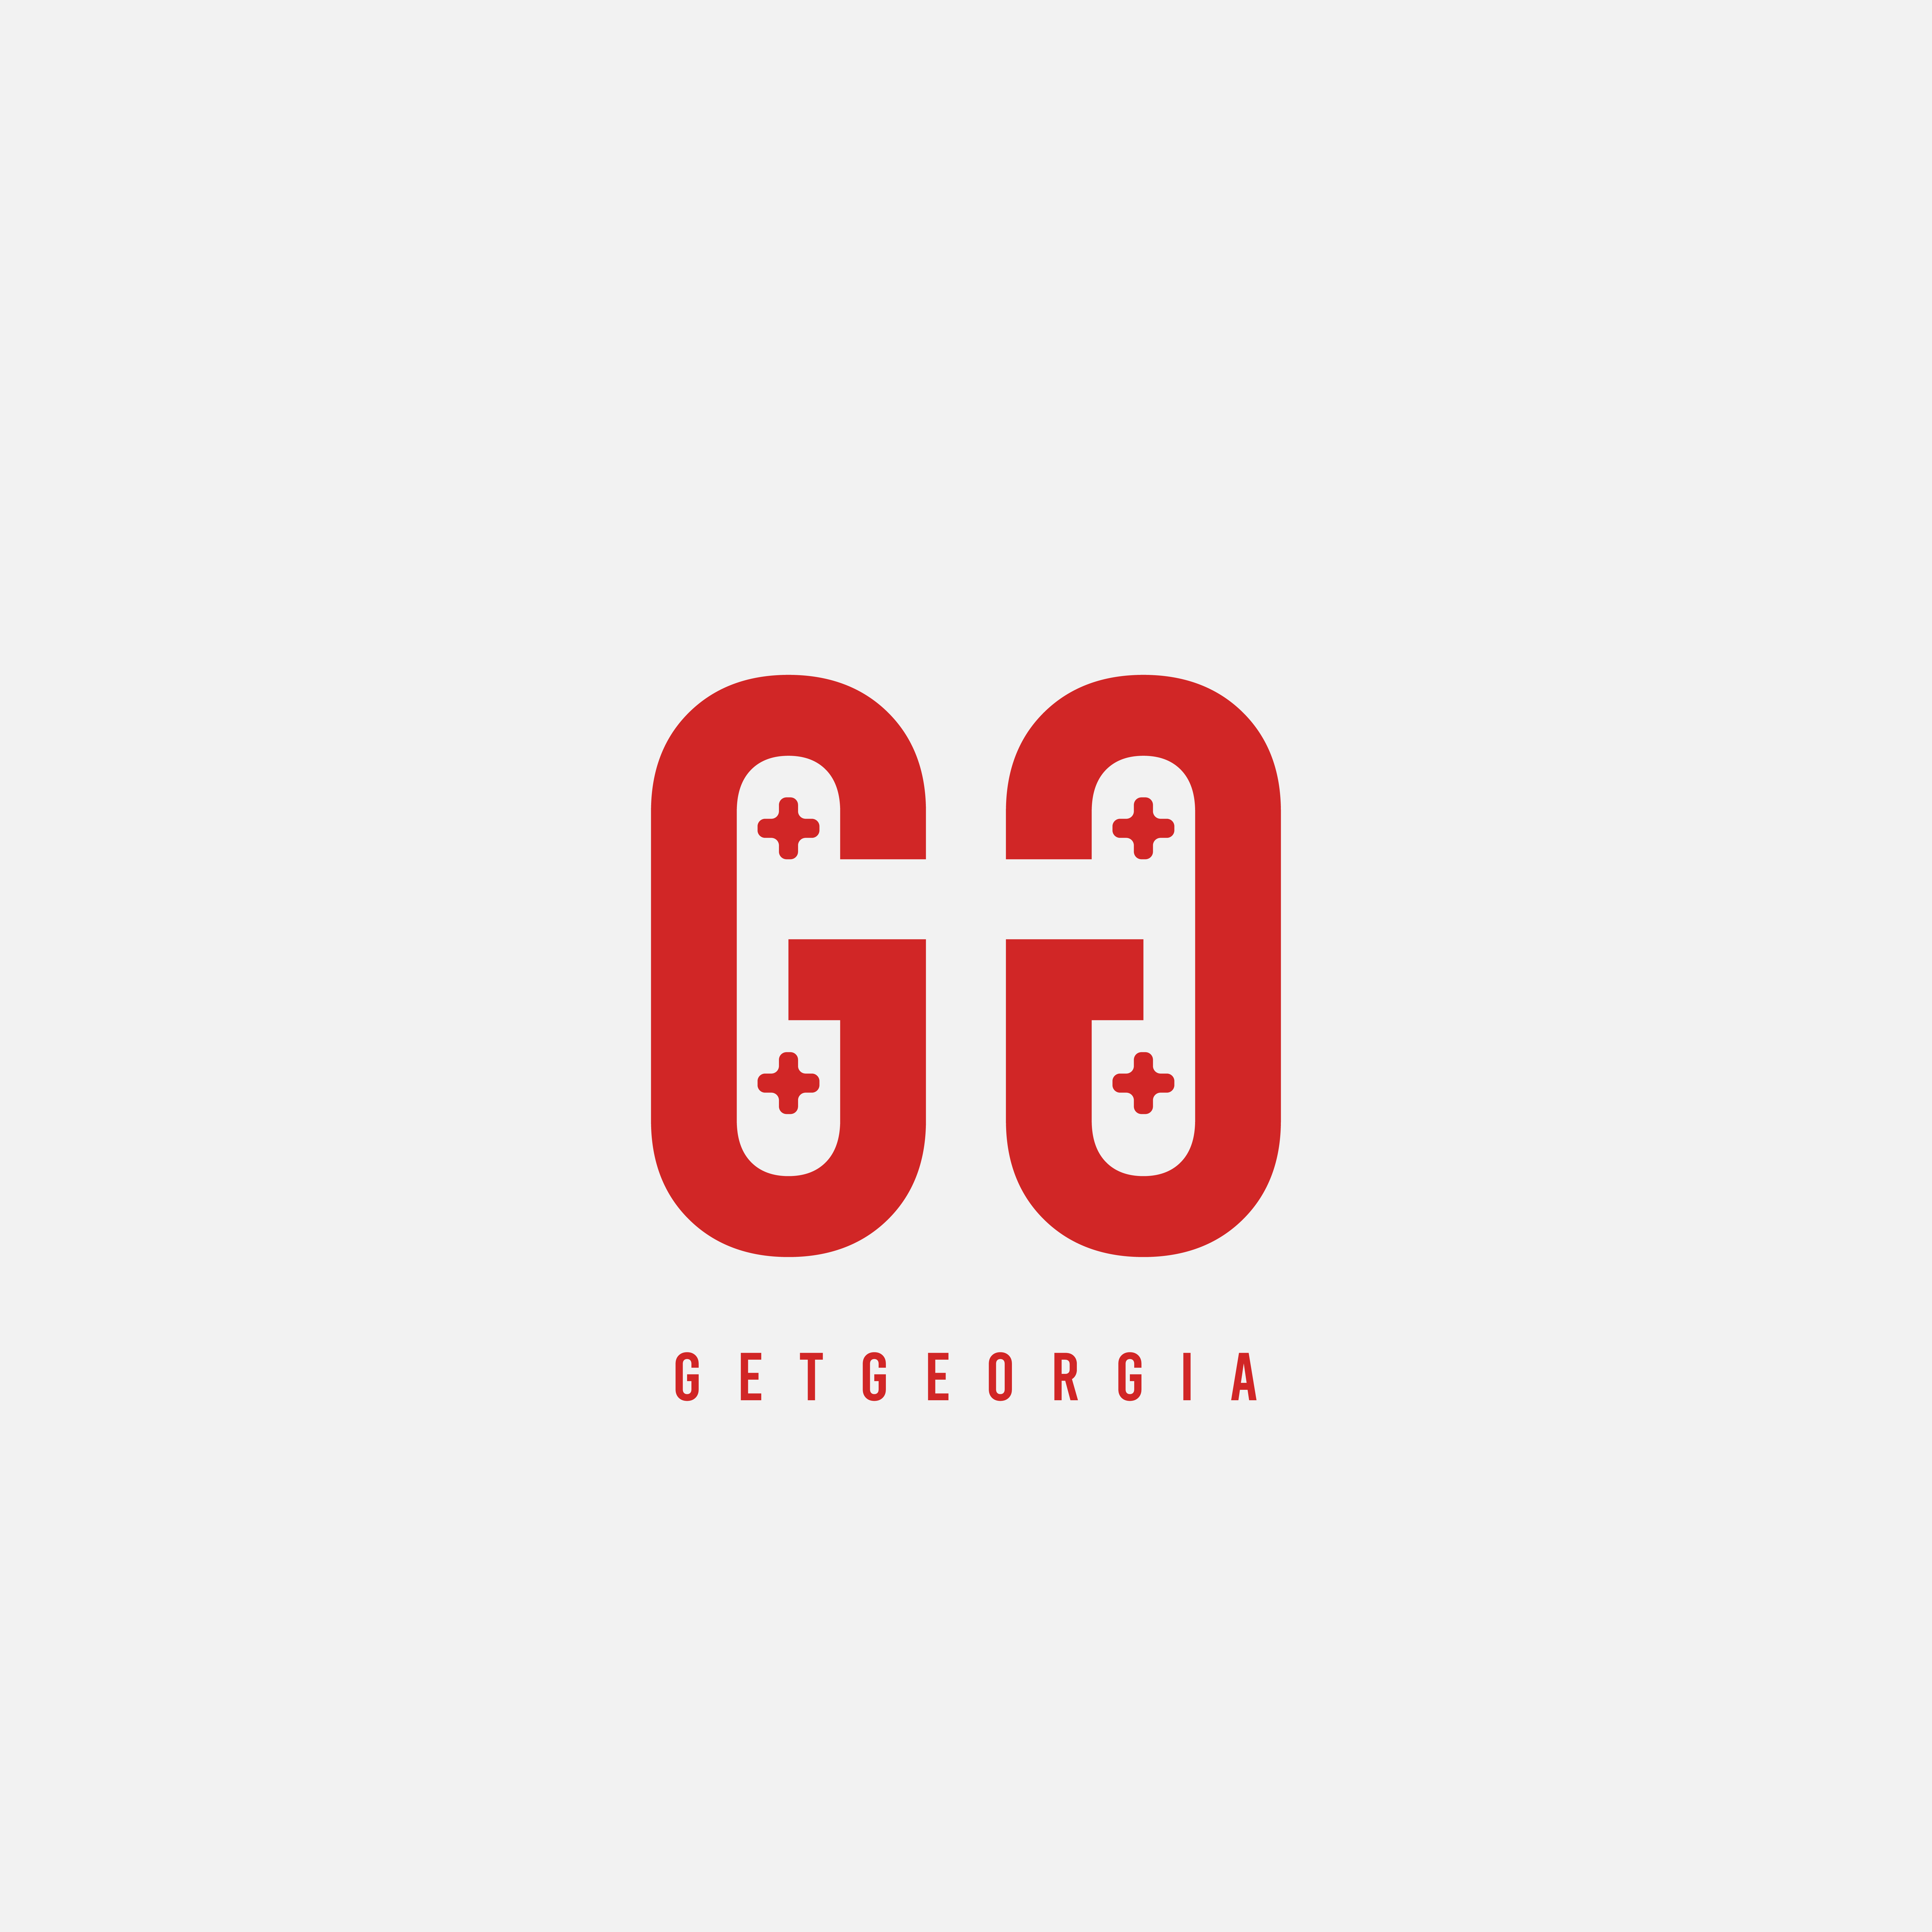 Get Georgia logo